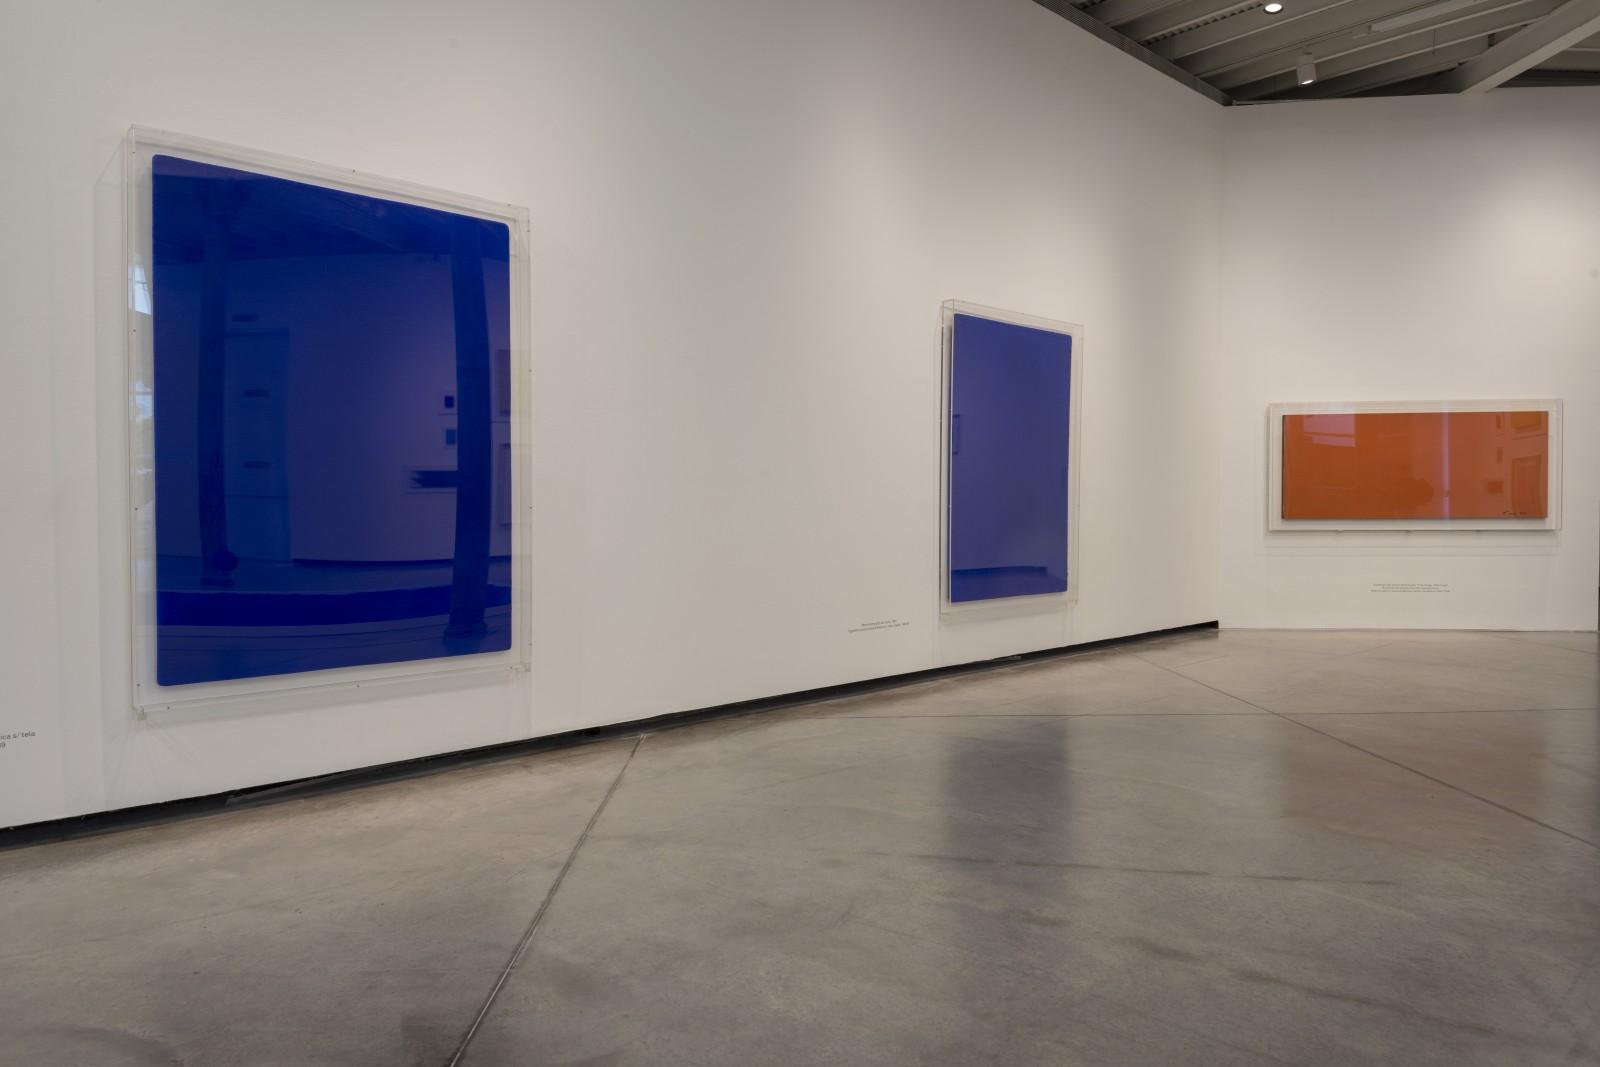 View of the exhibition "Yves Klein - Retrospectiva", PROA Fundación, 2017